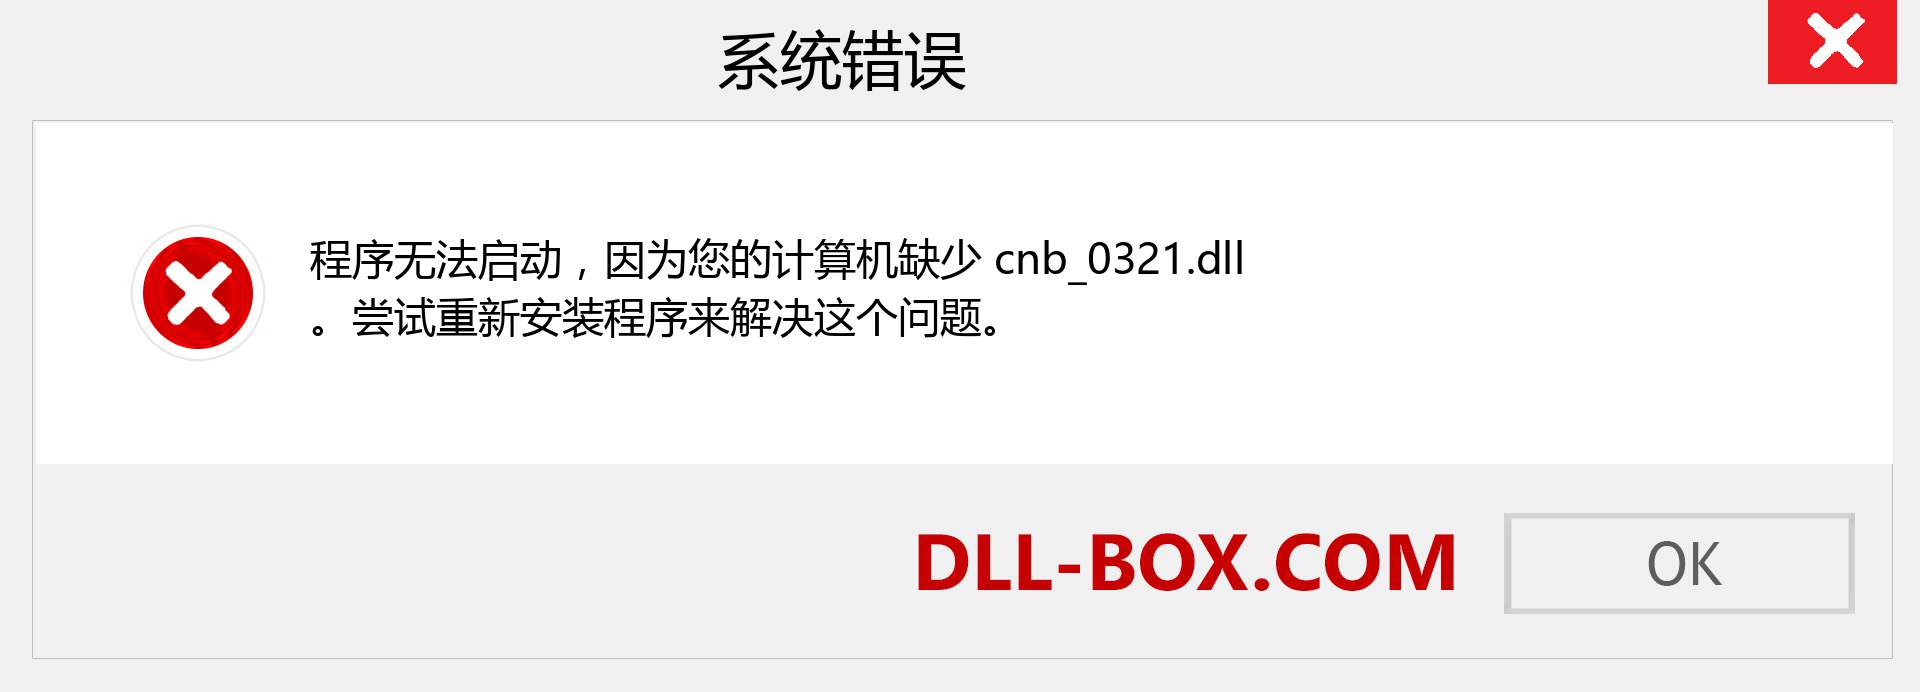 cnb_0321.dll 文件丢失？。 适用于 Windows 7、8、10 的下载 - 修复 Windows、照片、图像上的 cnb_0321 dll 丢失错误